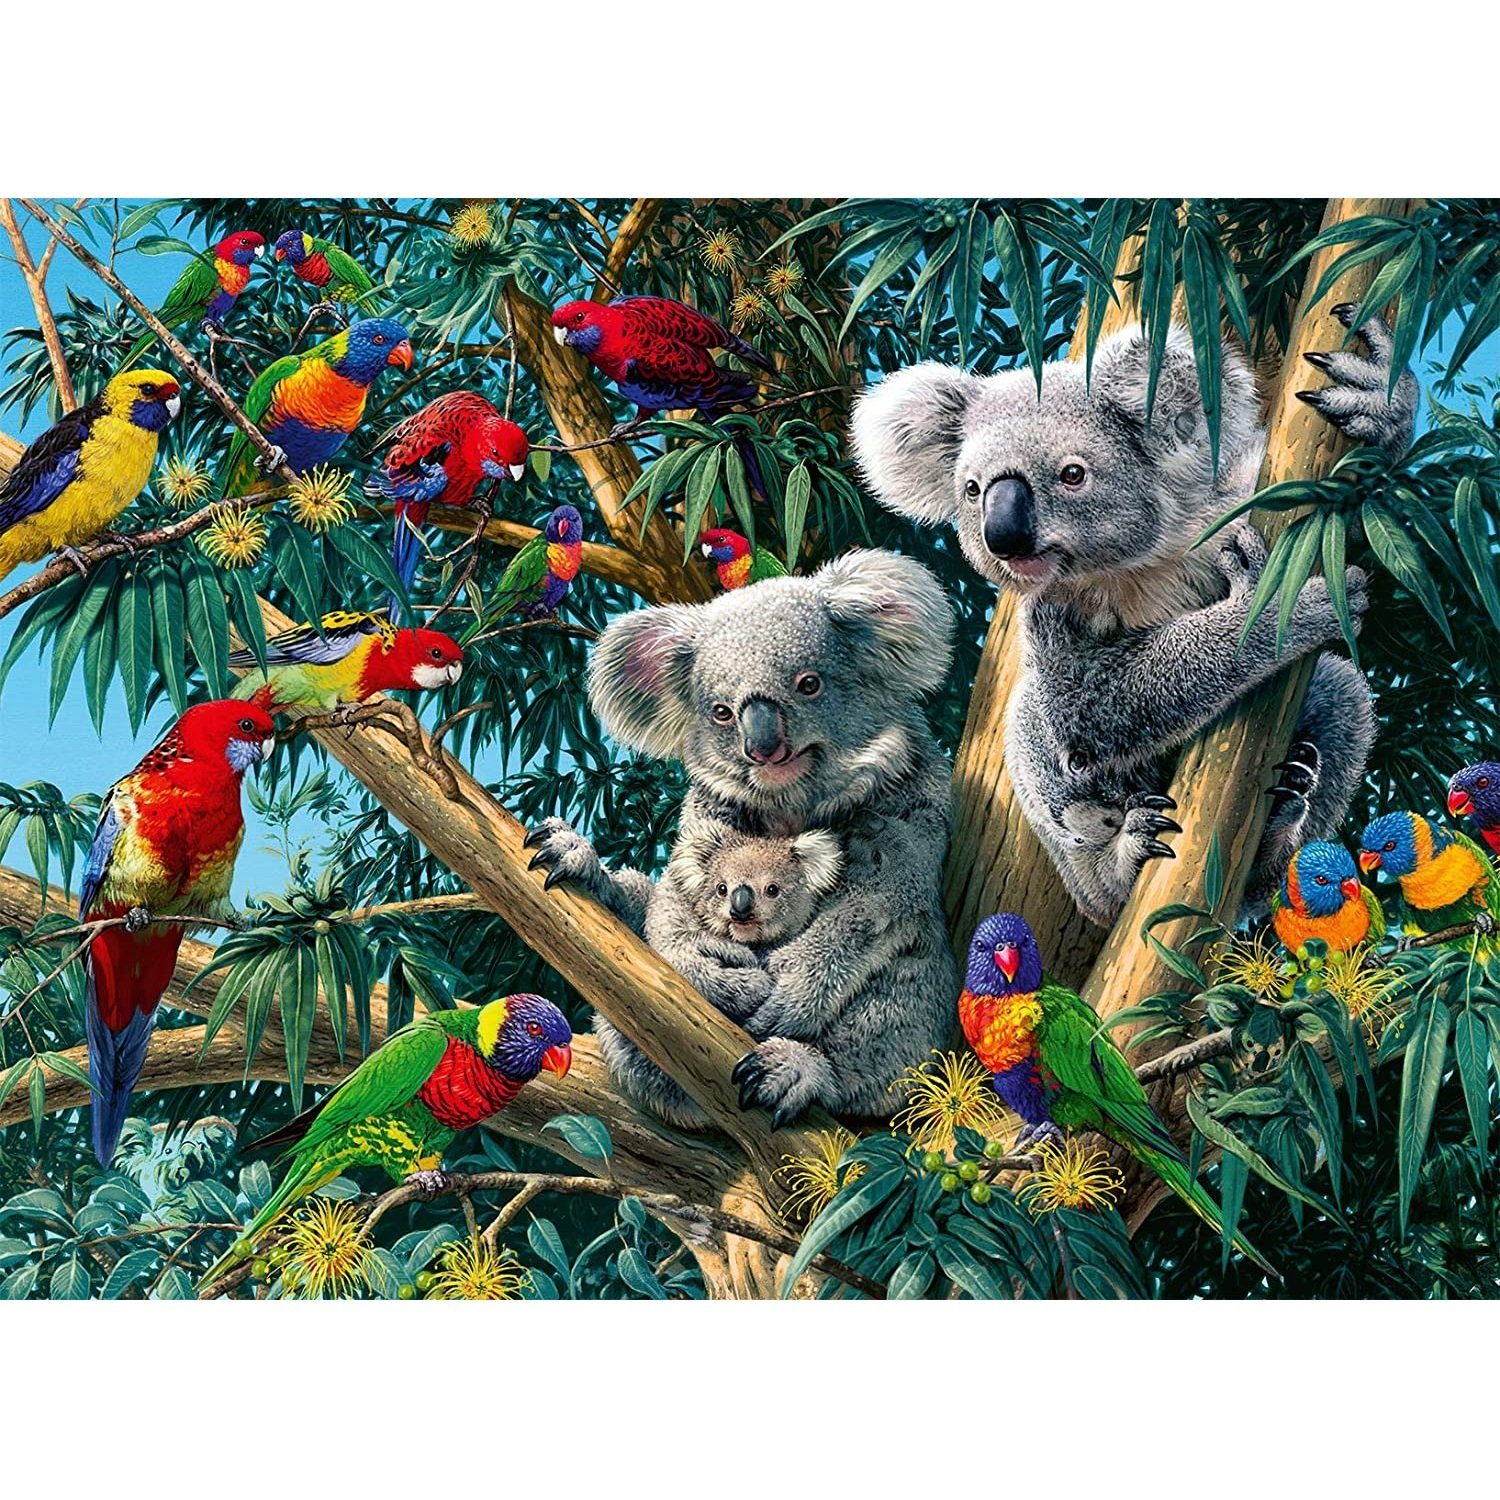 Puzzle, Ravensburger Koalas 500 500 Teile Puzzle Baum, Ravensburger im Puzzleteile -